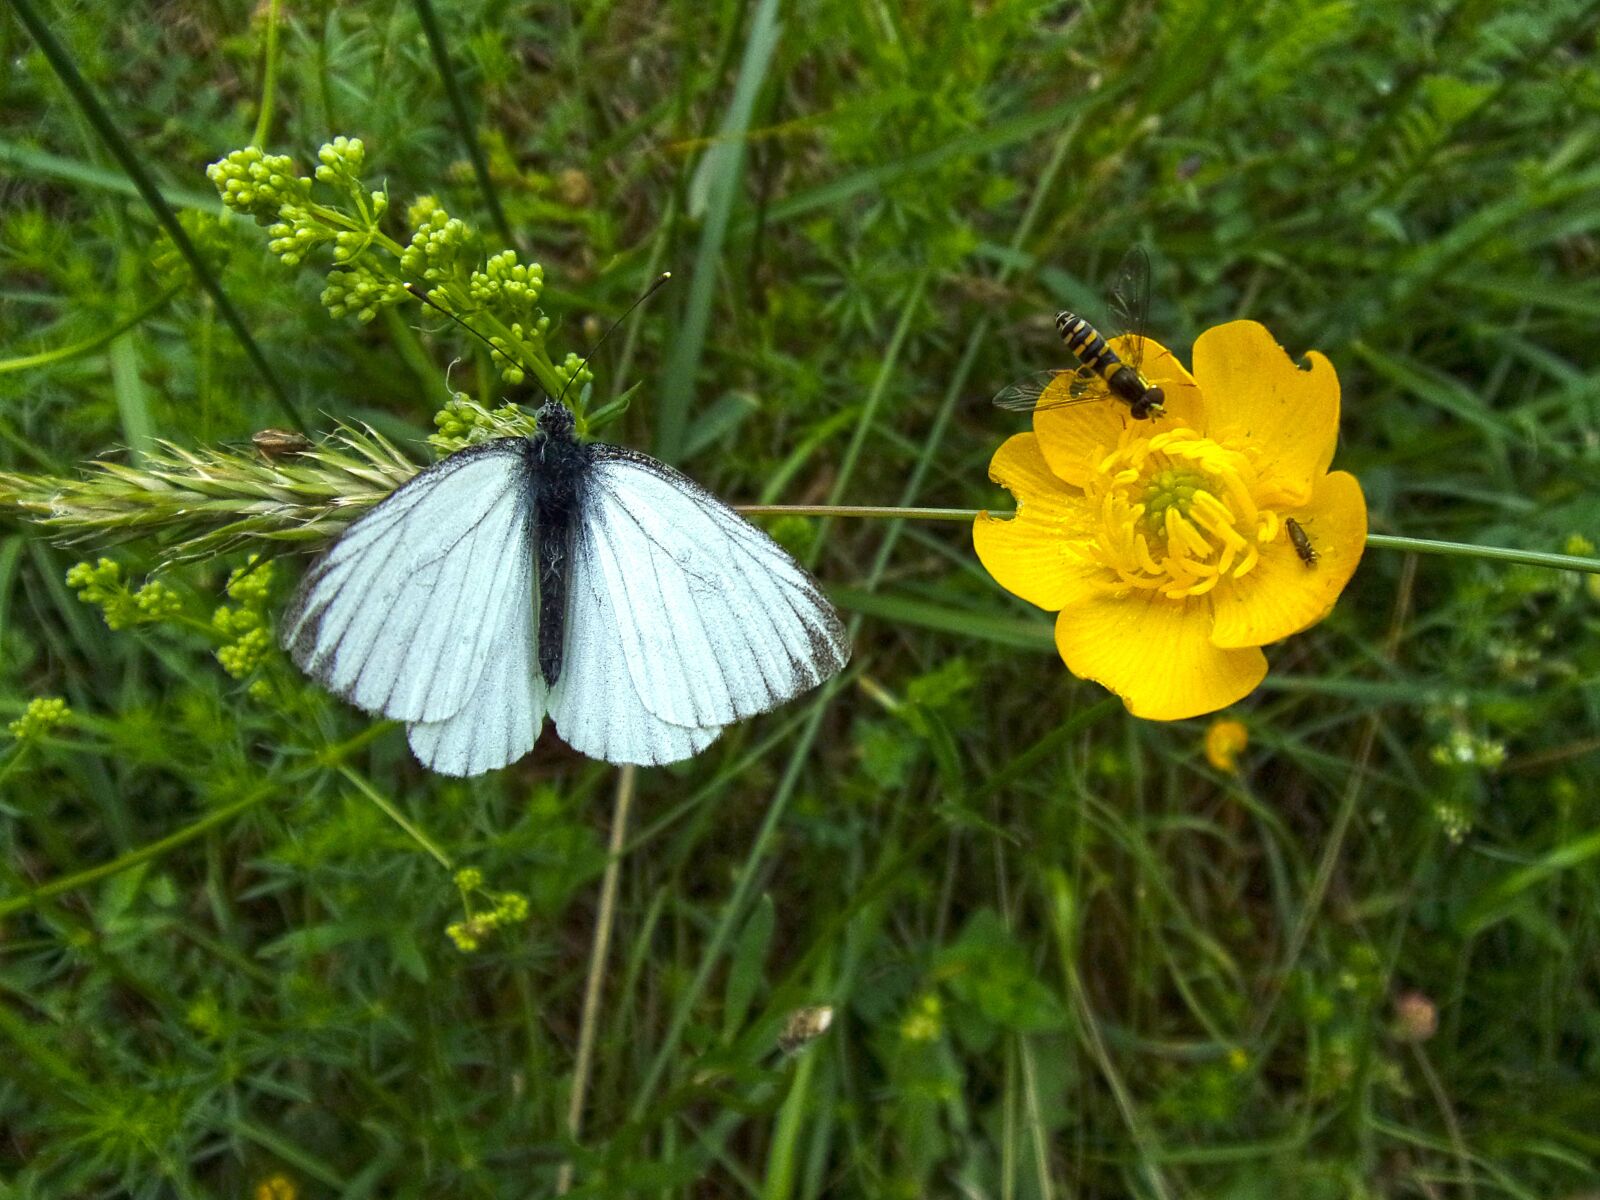 Kodak PIXPRO FZ151 sample photo. Butterfly, insect, nature photography